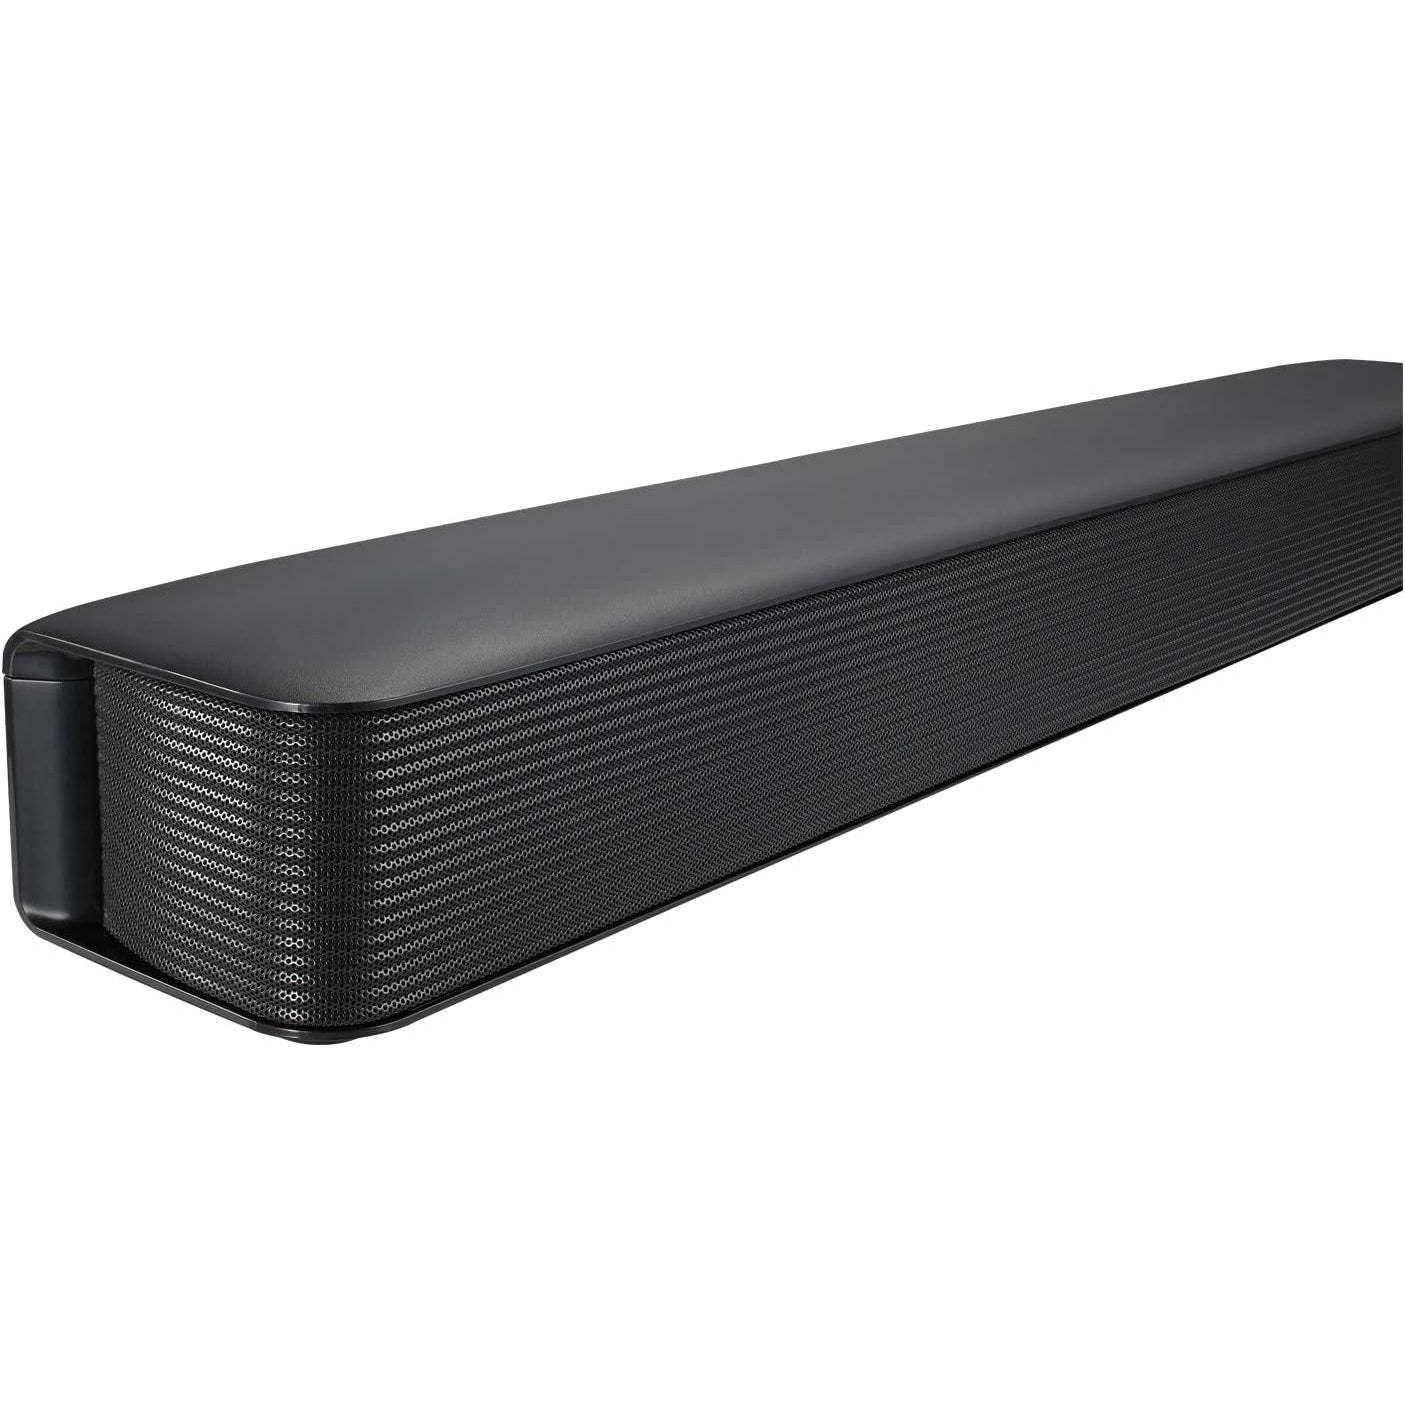 LG SK1 All-in-One Soundbar - Black